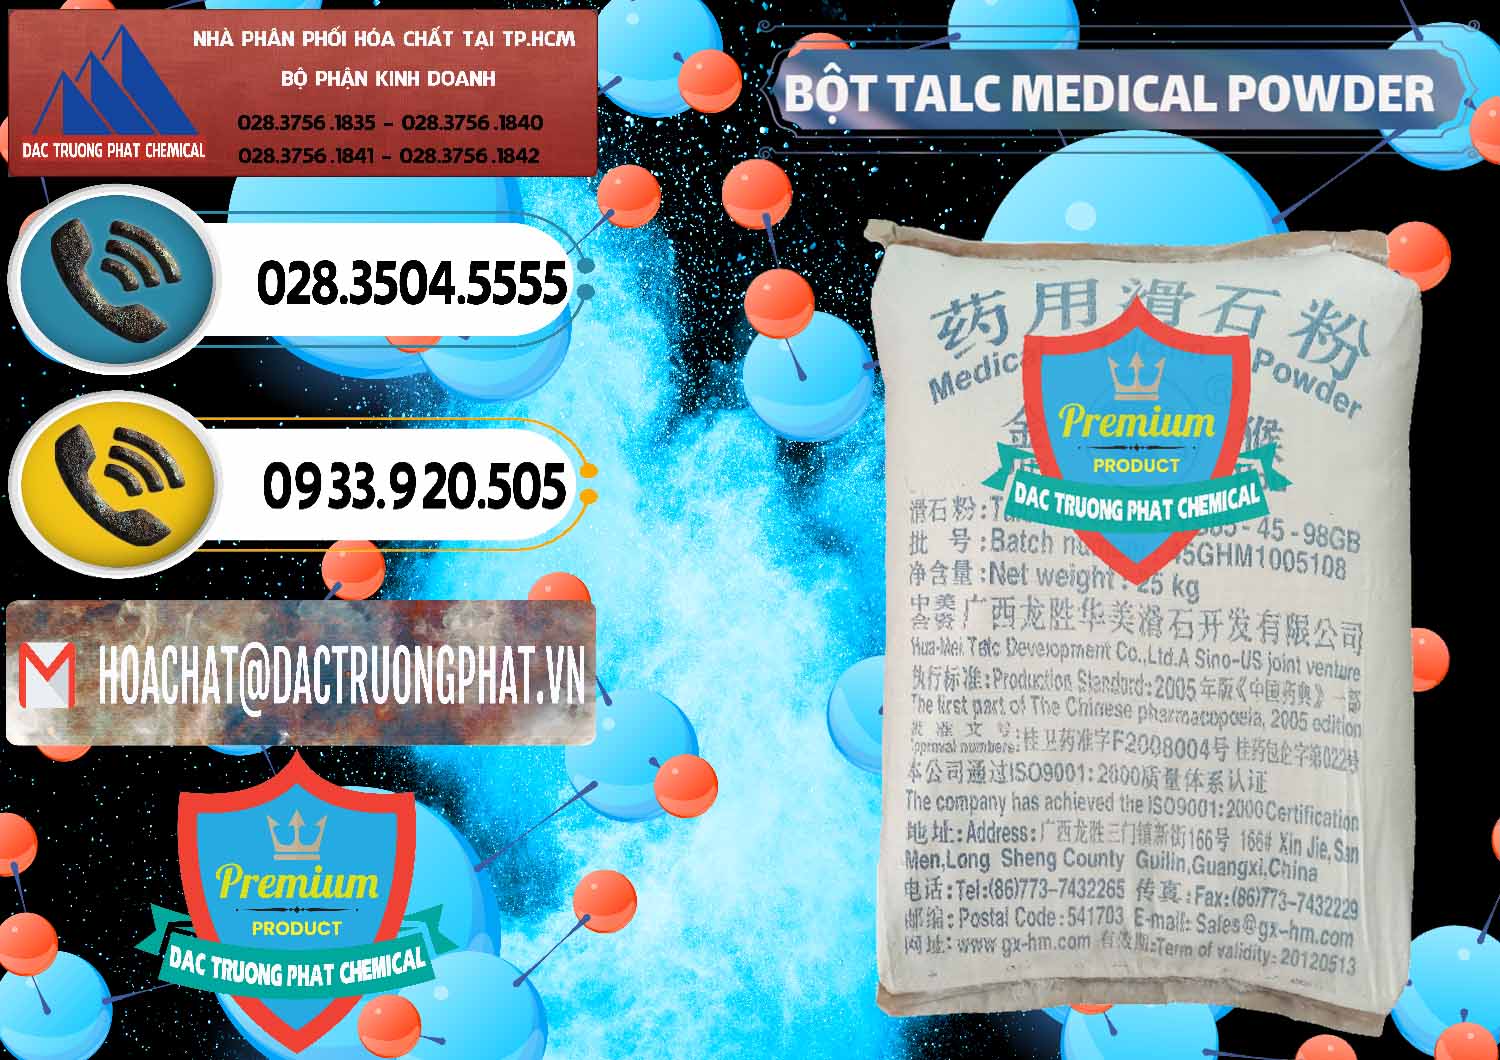 Đơn vị nhập khẩu và bán Bột Talc Medical Powder Trung Quốc China - 0036 - Nơi chuyên cung cấp - bán hóa chất tại TP.HCM - hoachatdetnhuom.vn